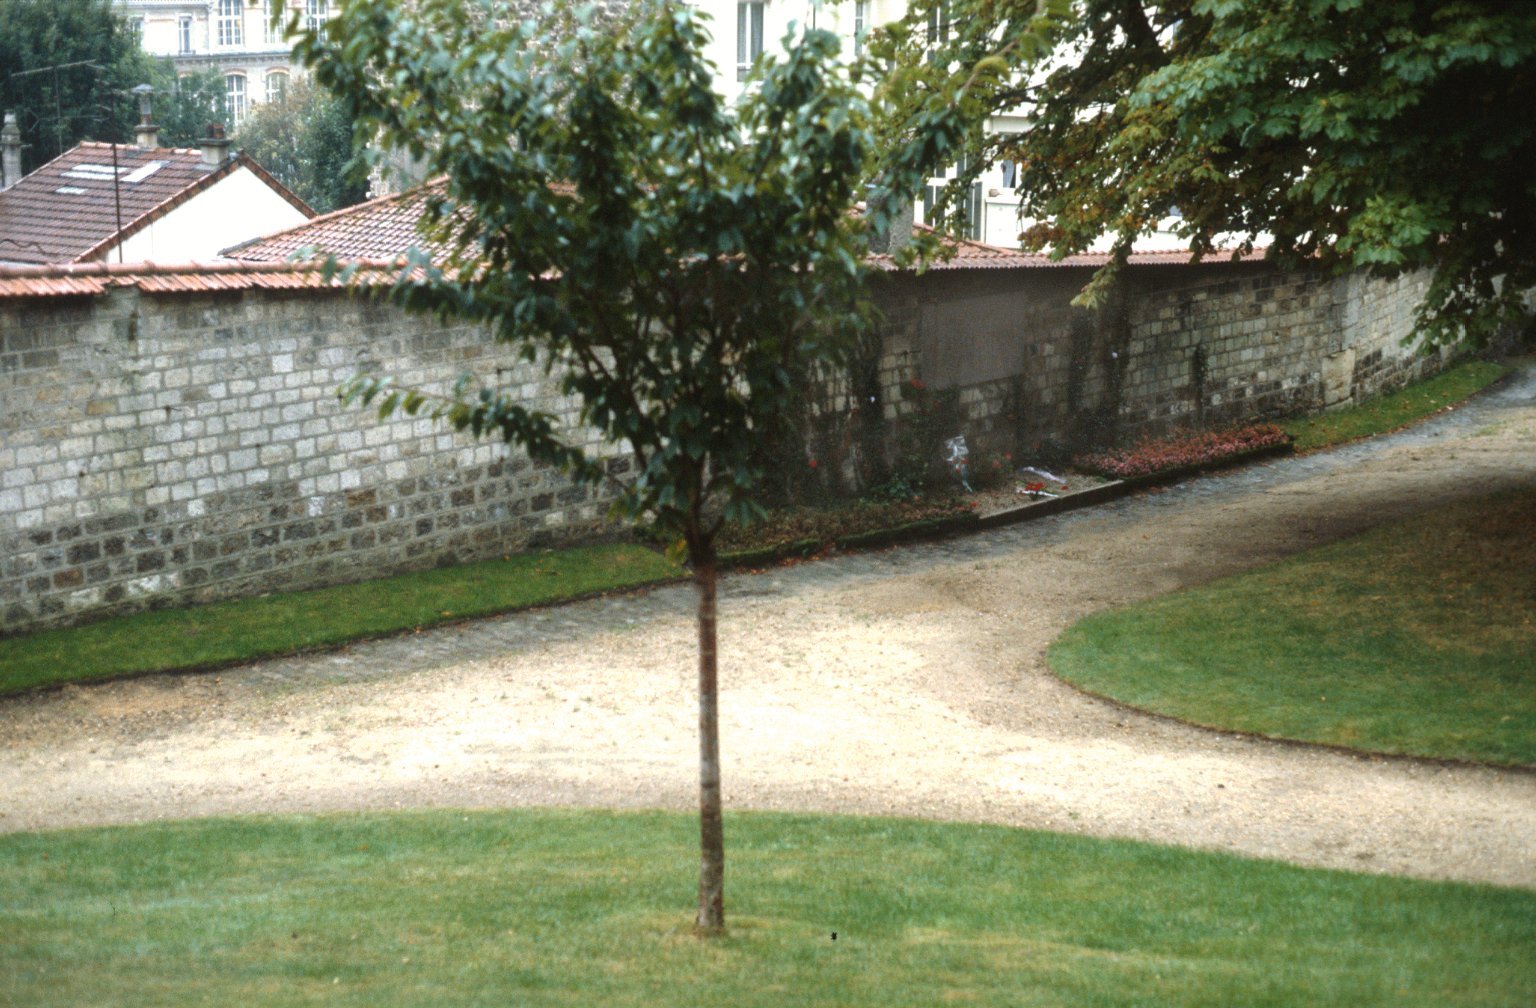 Père-Lachaise Cemetery